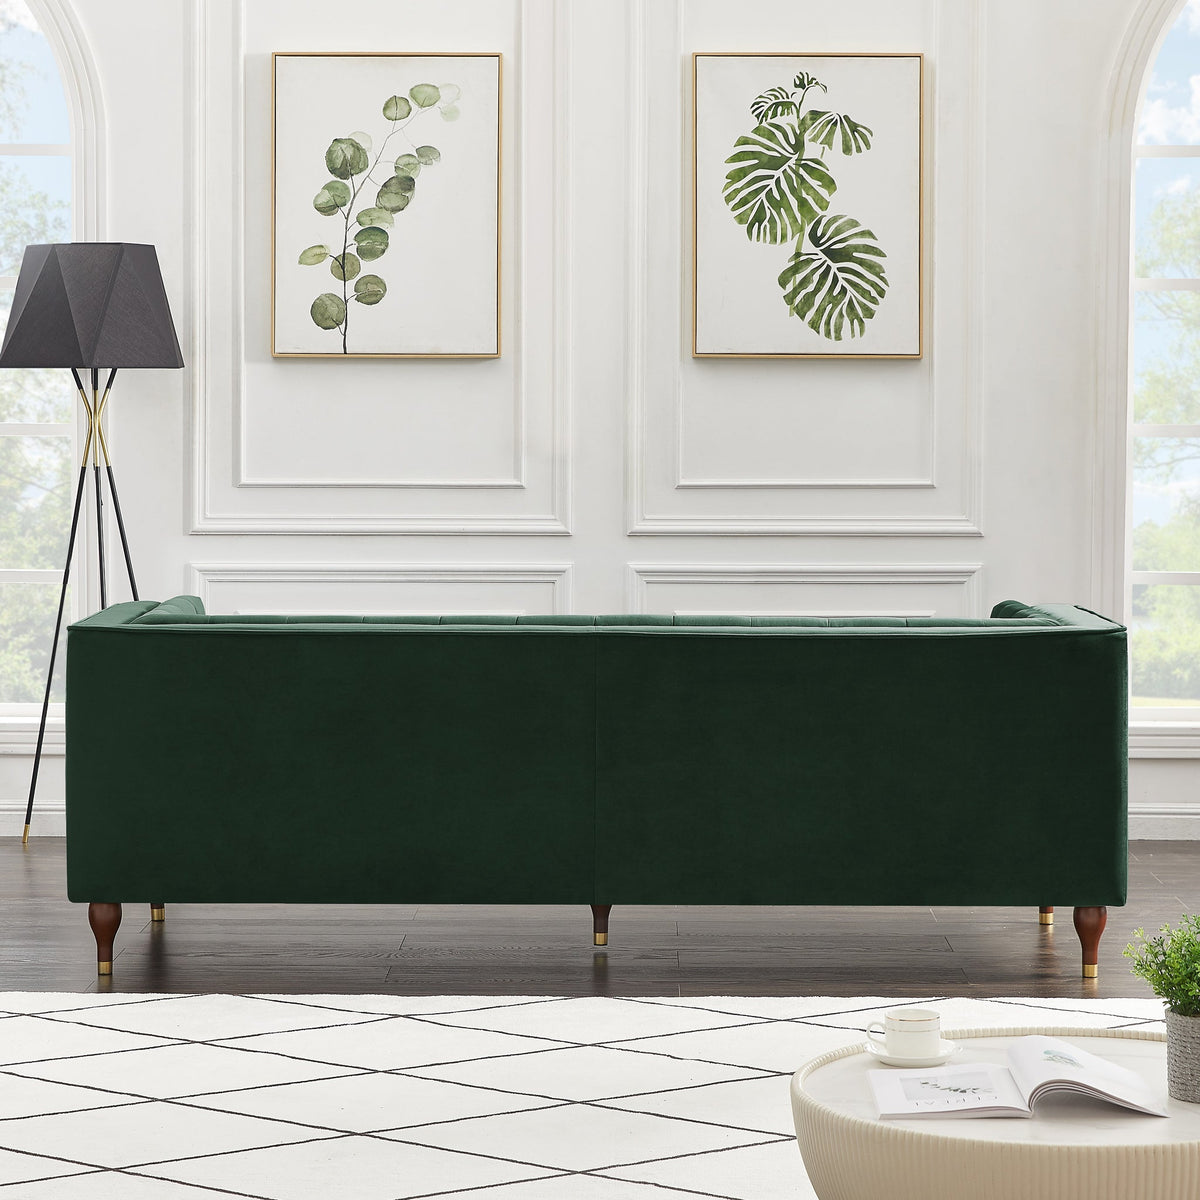 Houston Modern Sofa (Green - Velvet) | Mid in Mod | Houston TX | Best Furniture stores in Houston